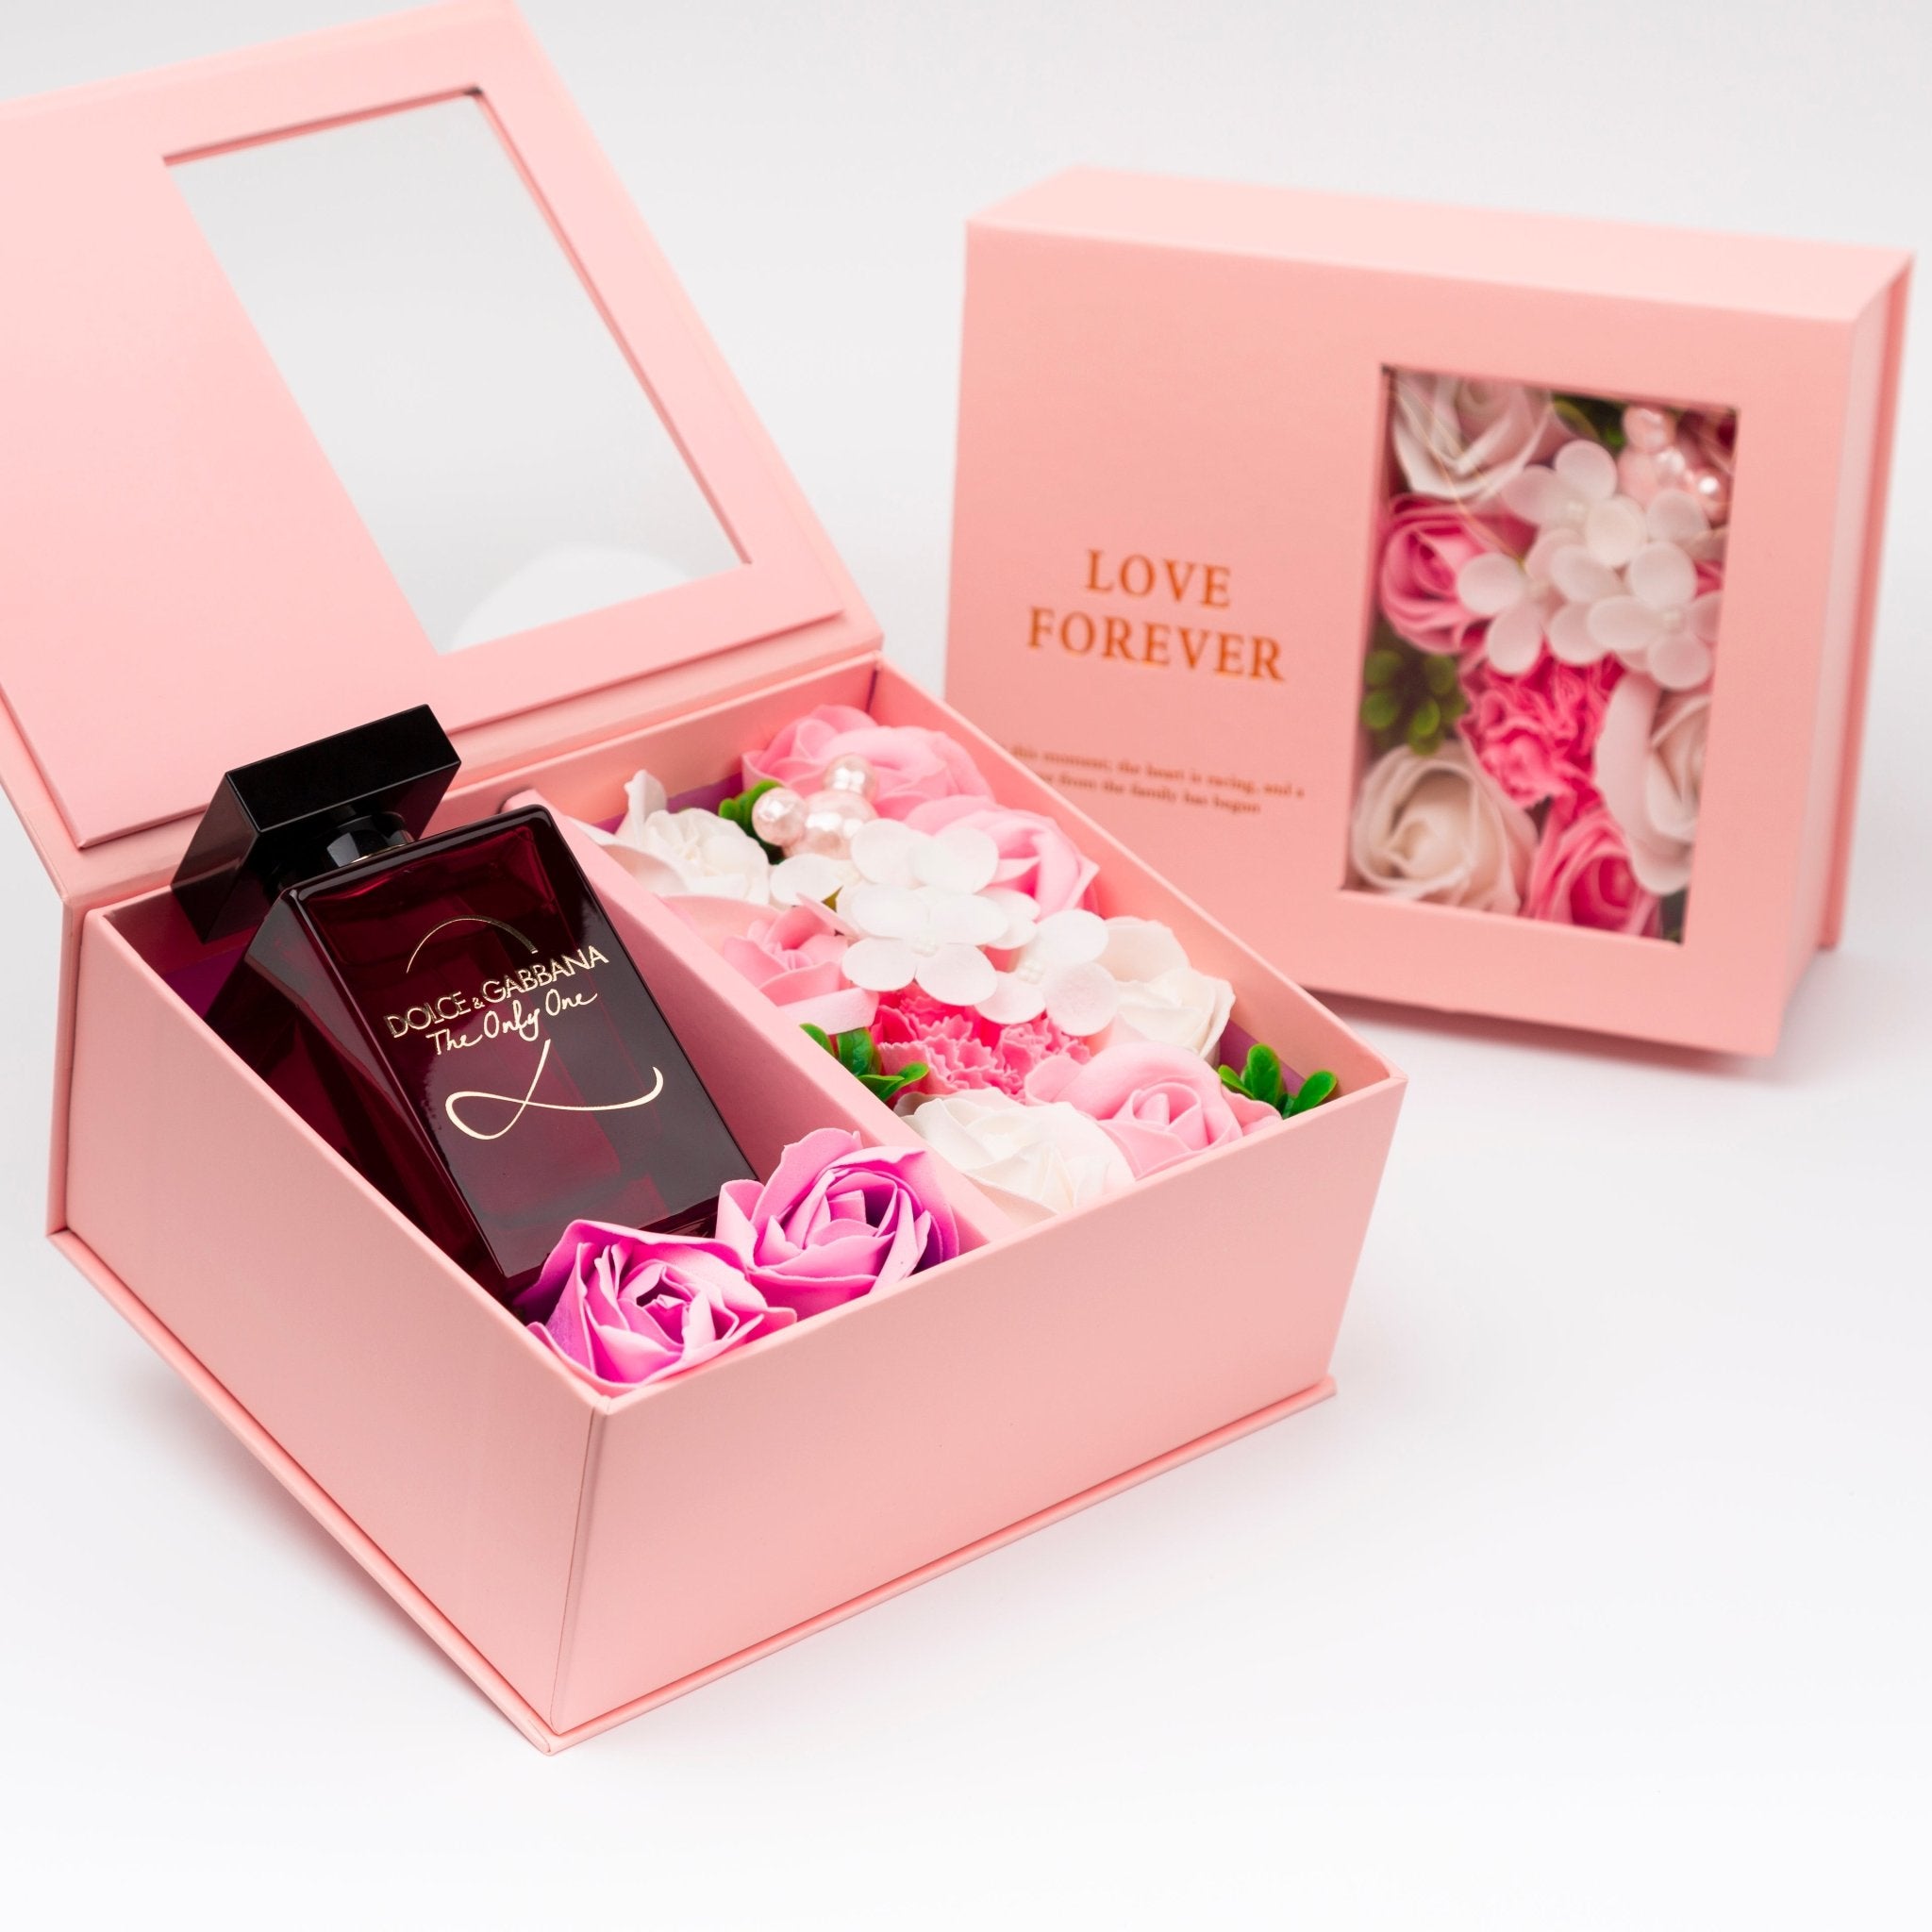 Flower Box - Perfume Gift For Women 17 - #shoFlower Box - Perfume Gift For Women 17p_name#Flower Box - Perfume Gift For Women 17Gift Boxes & TinsTakreemTakreem.joWomenPerfumeFlower Box - Perfume Gift For Women 17 - Takreem.jo